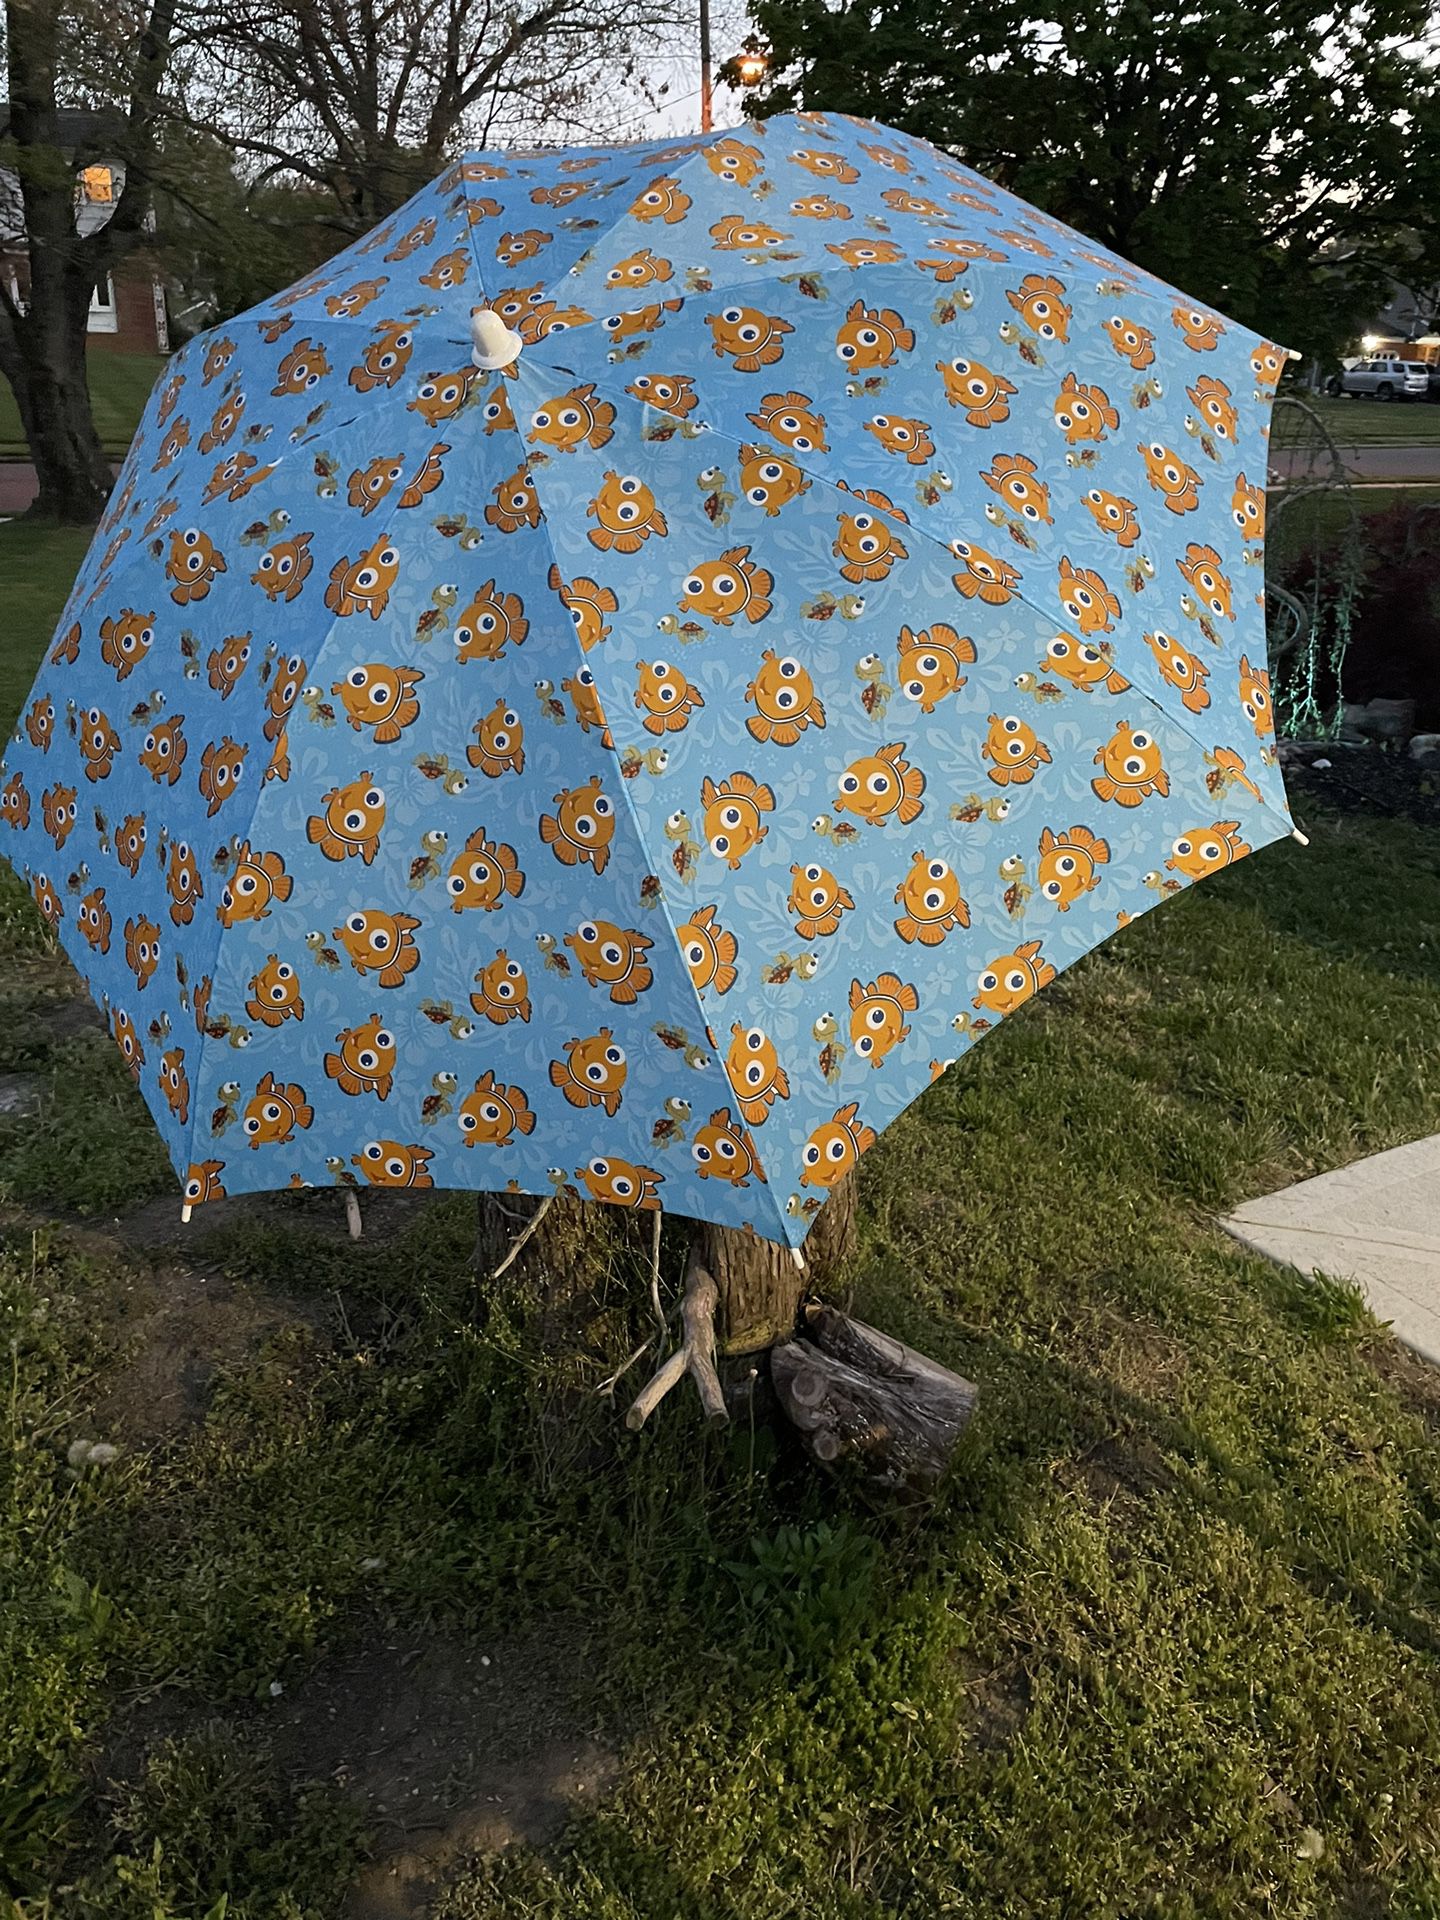 Beach Umbrella with fish design